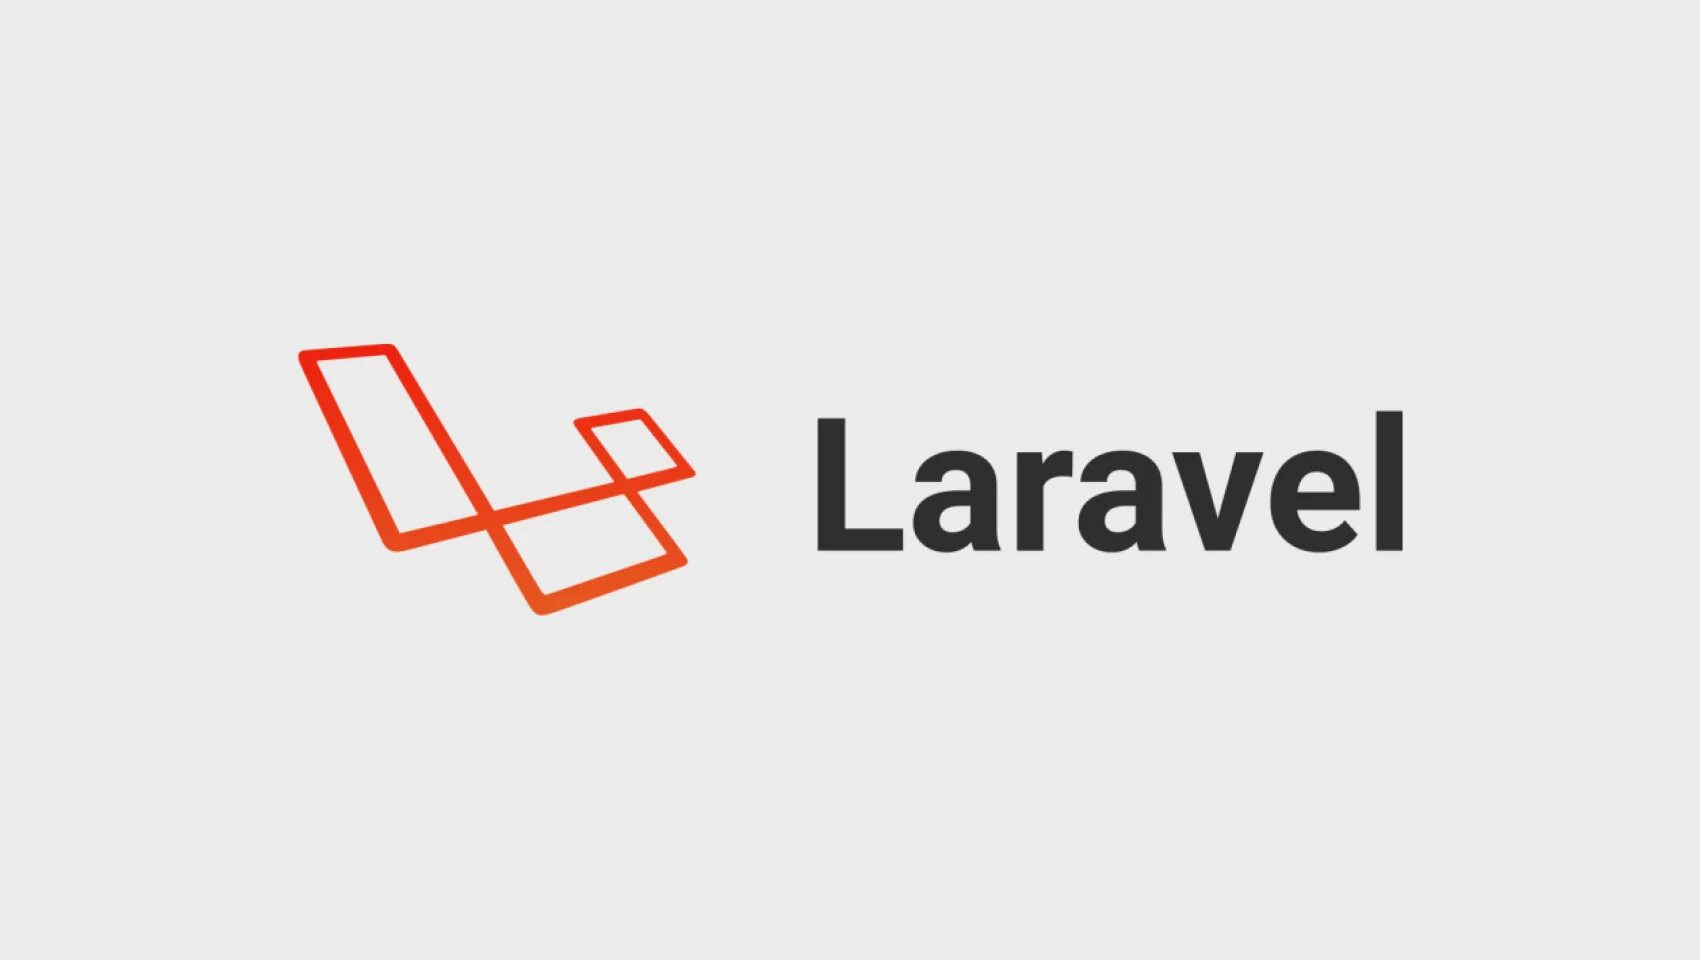 Add laravel. Laravel. Laravel логотип. Логотип ларавель. Laravel картинки.